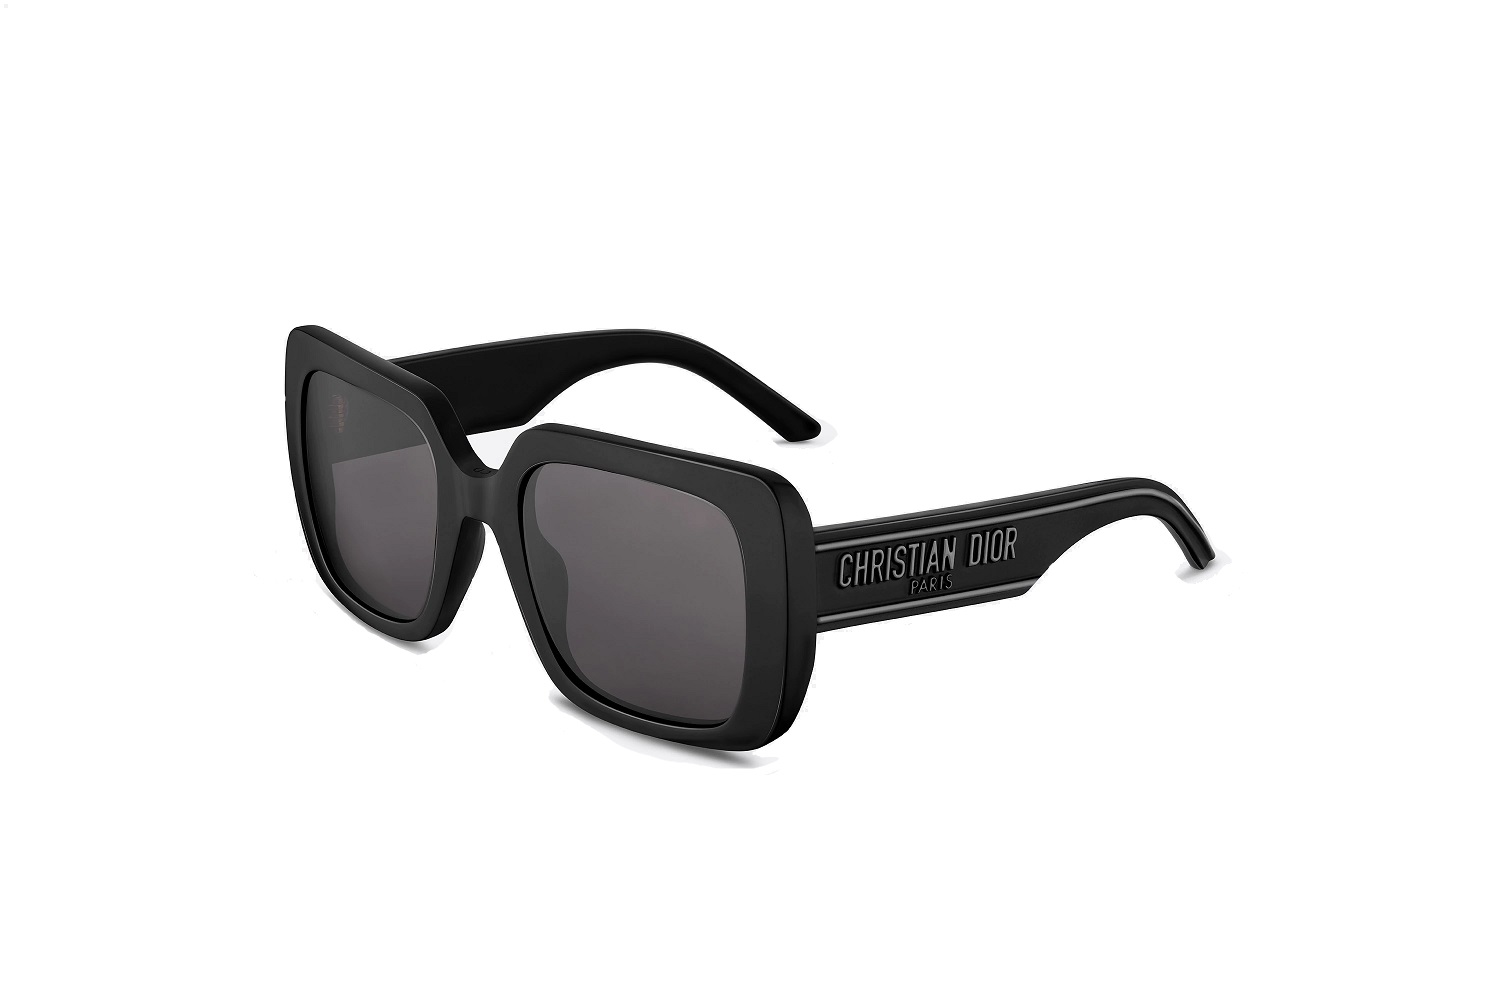 Dior STELLAIRE1 EYR купить в Сочи  Цены на мужские женские солнцезащитные  очки и оправы  Доставка по всей России Интернетмагазин салона Ависта  Оптика